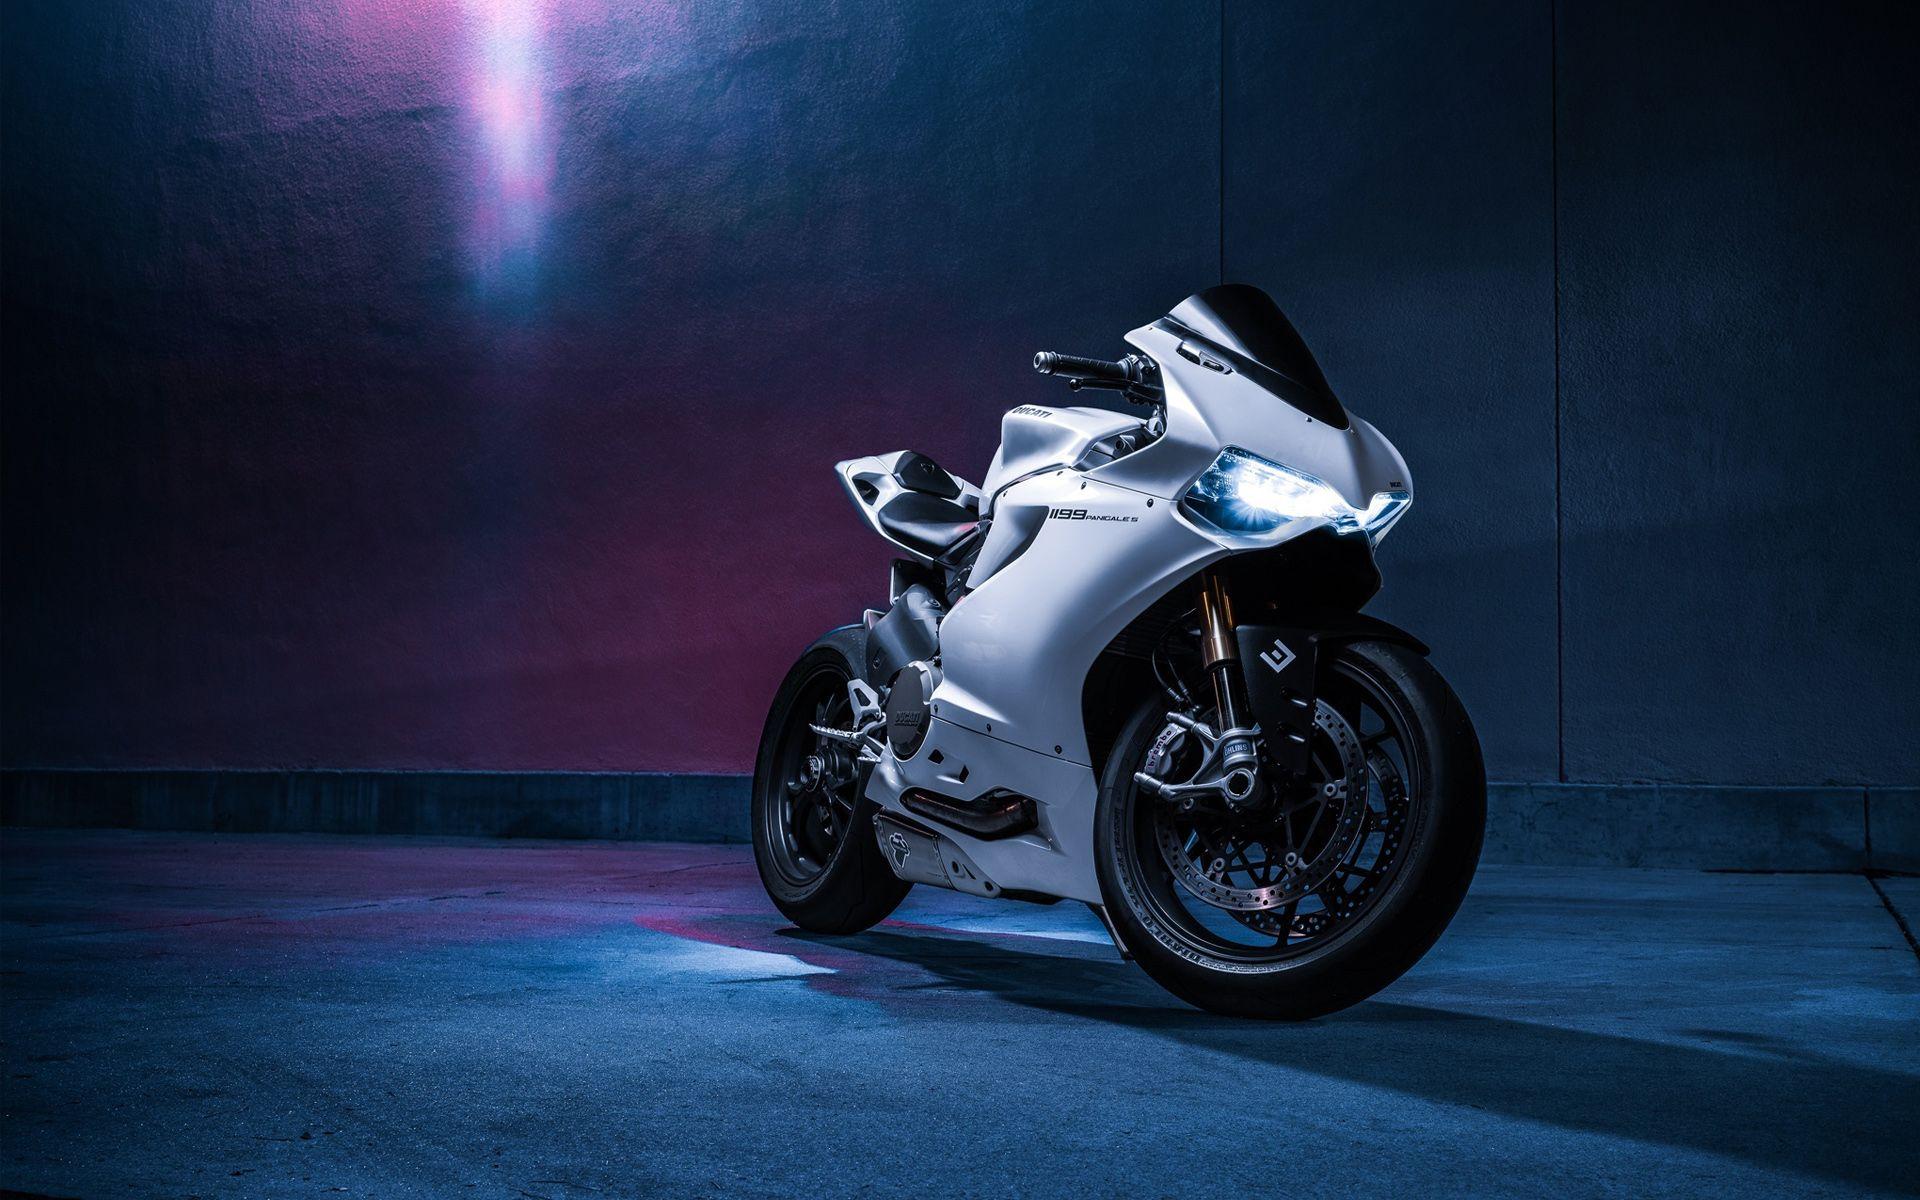 Hình nền Ducati sẽ khiến những ai đam mê thể thao tốc độ đắm chìm trong cảm giác hưng phấn và mạnh mẽ. Không chỉ đơn giản là một hình nền, nó còn thể hiện phong cách và gu thẩm mỹ của bạn.